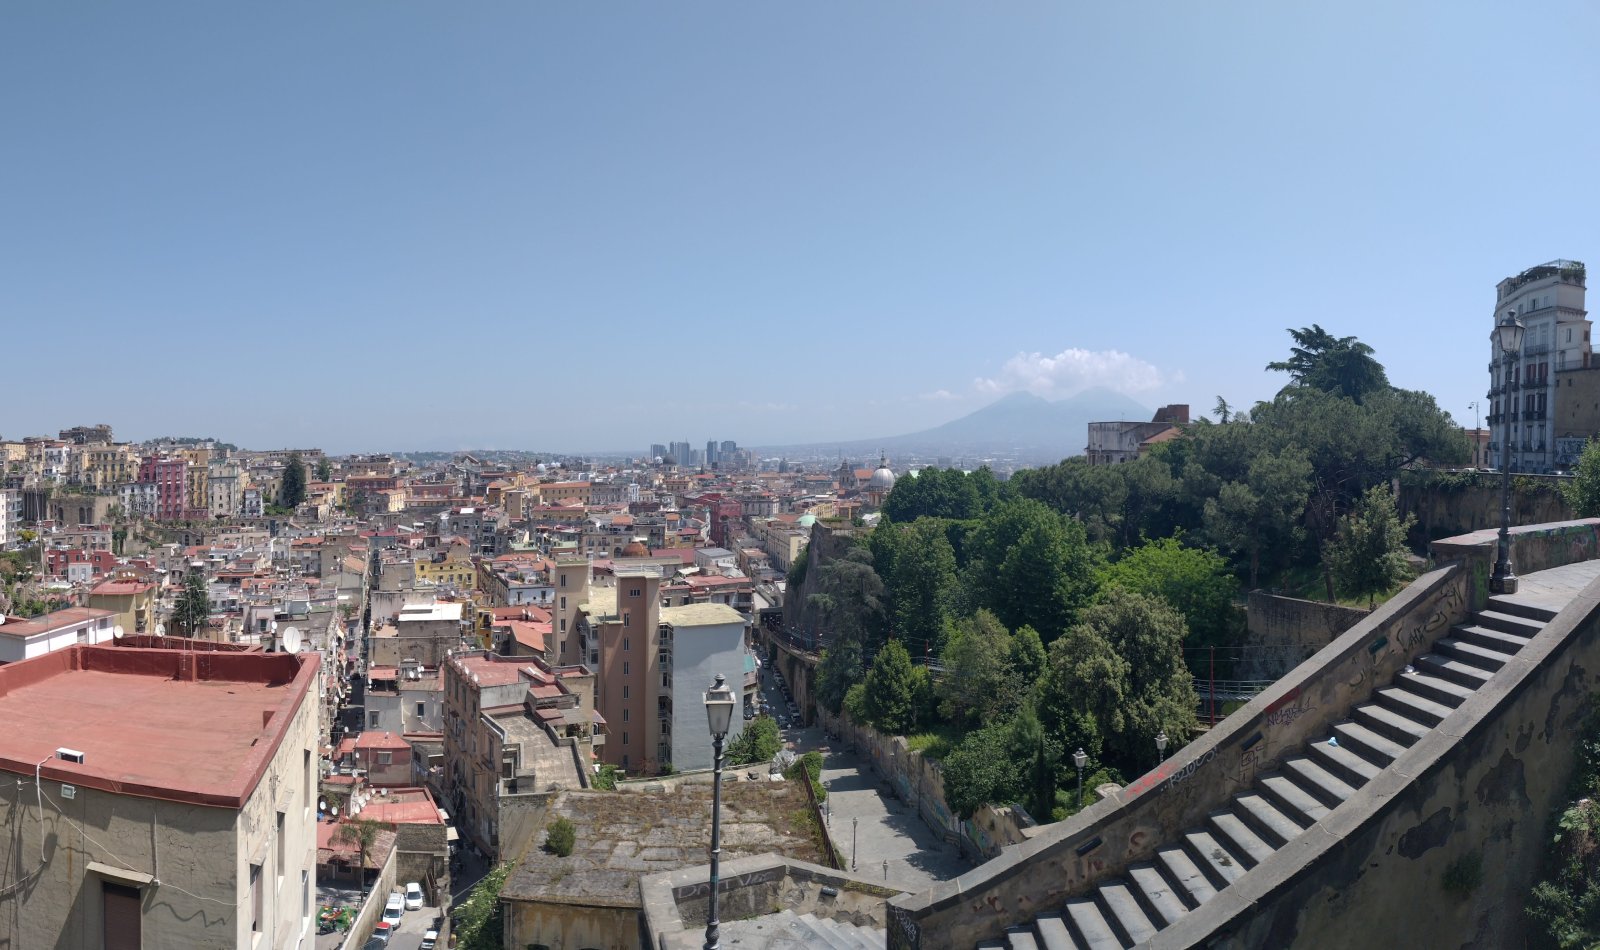 Pedamentina von Neapel von oben gesehen